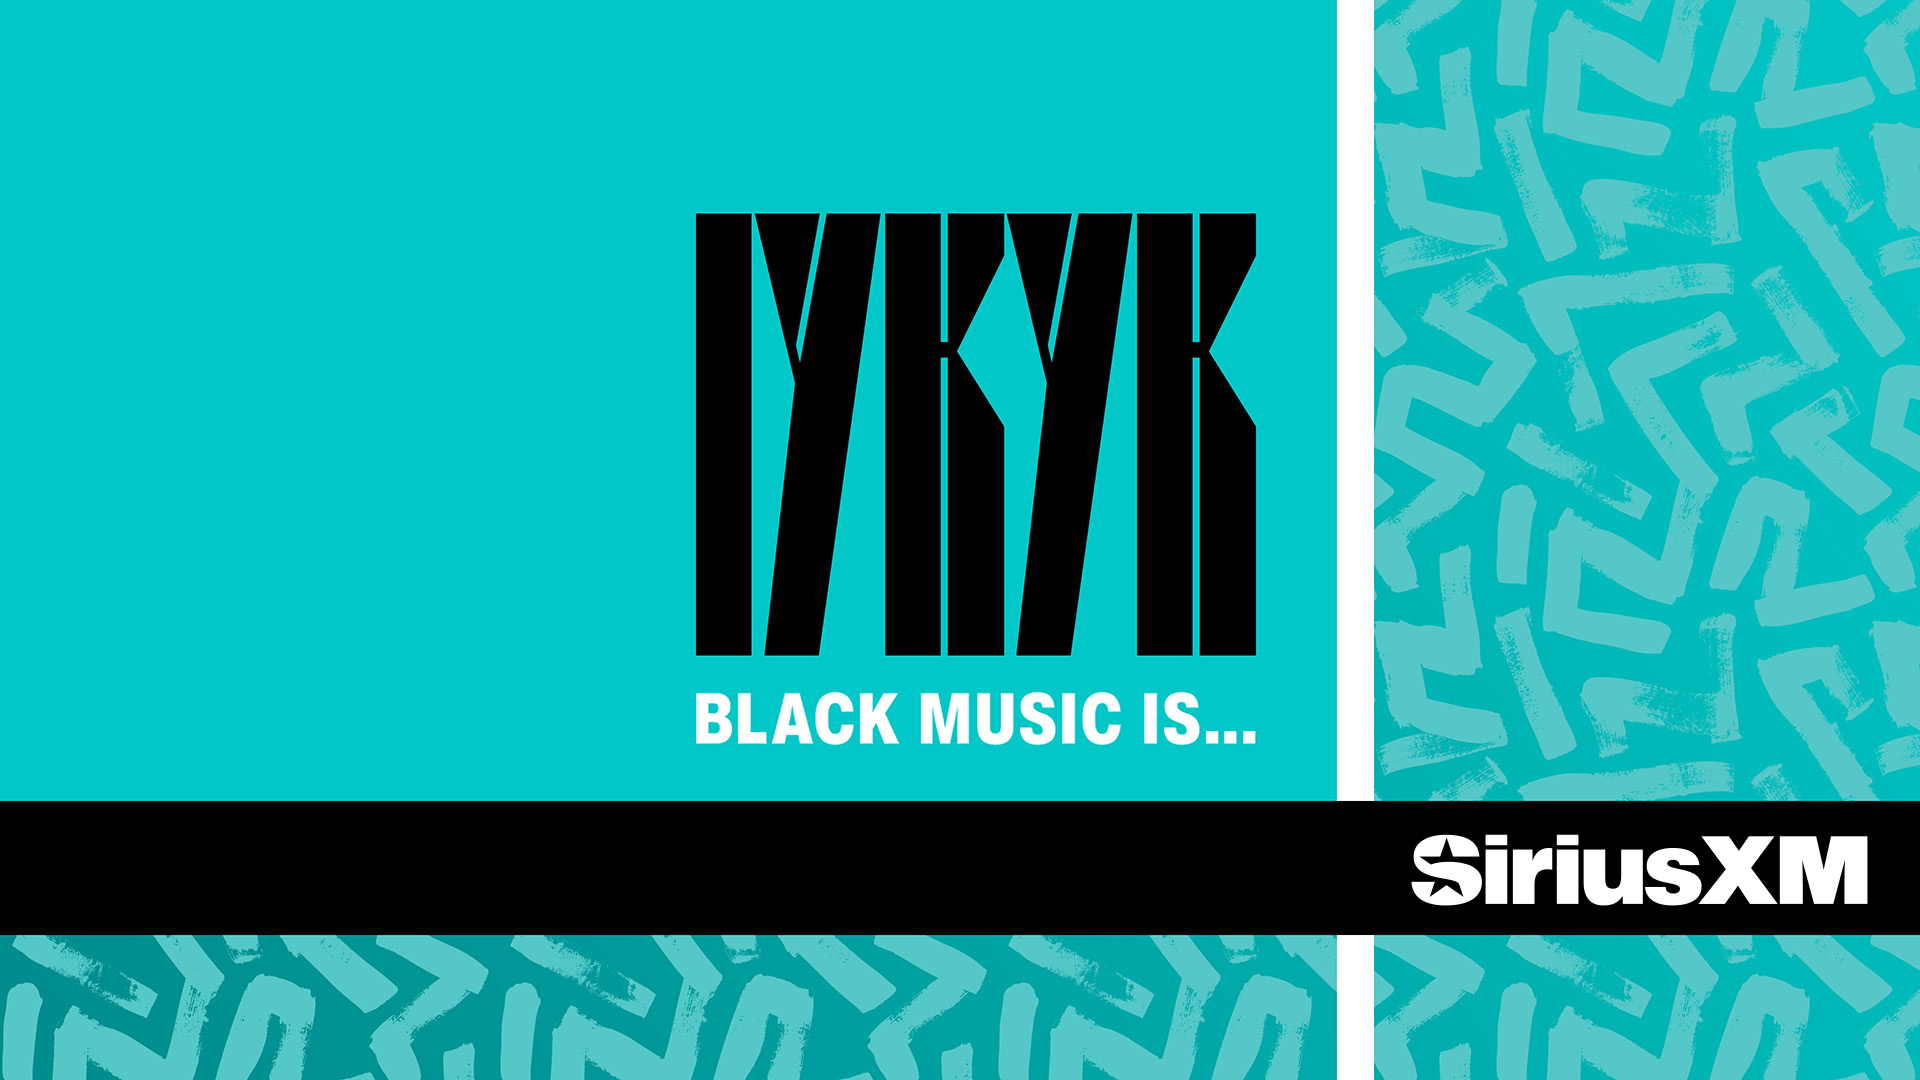 IYKYK Black Music Is... Black Music Month on SiriusXM